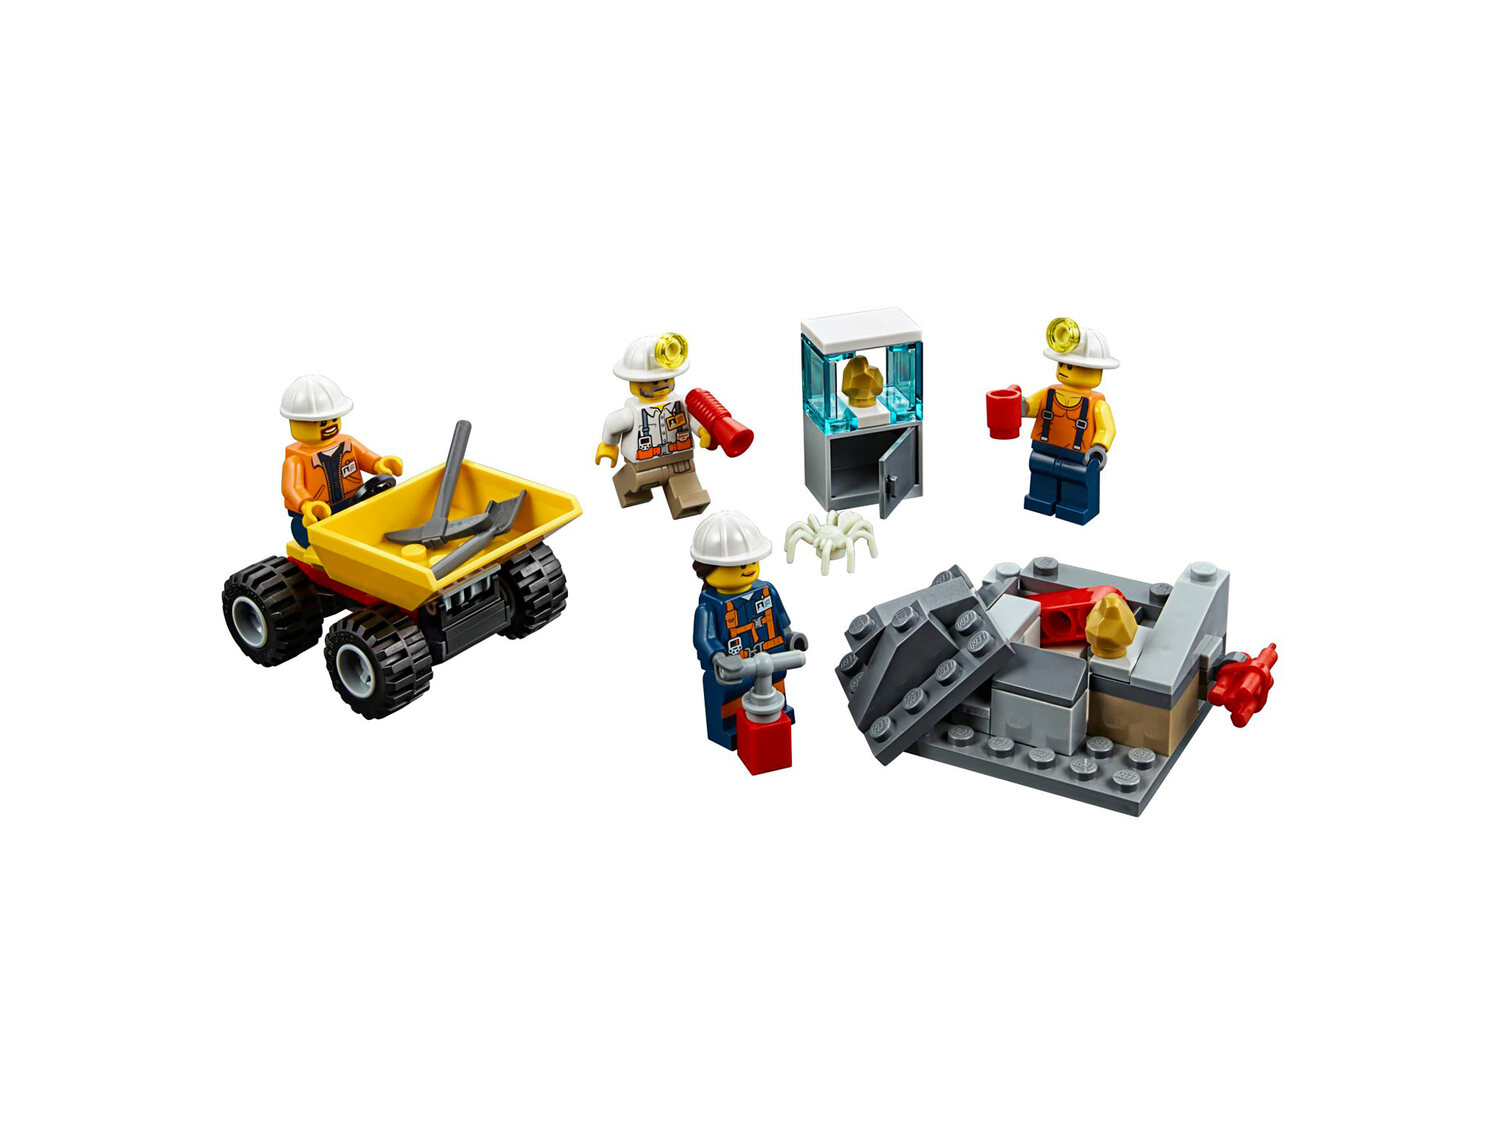 Klocki Lego 60184 Lego, cena 34,99 PLN  

Opis